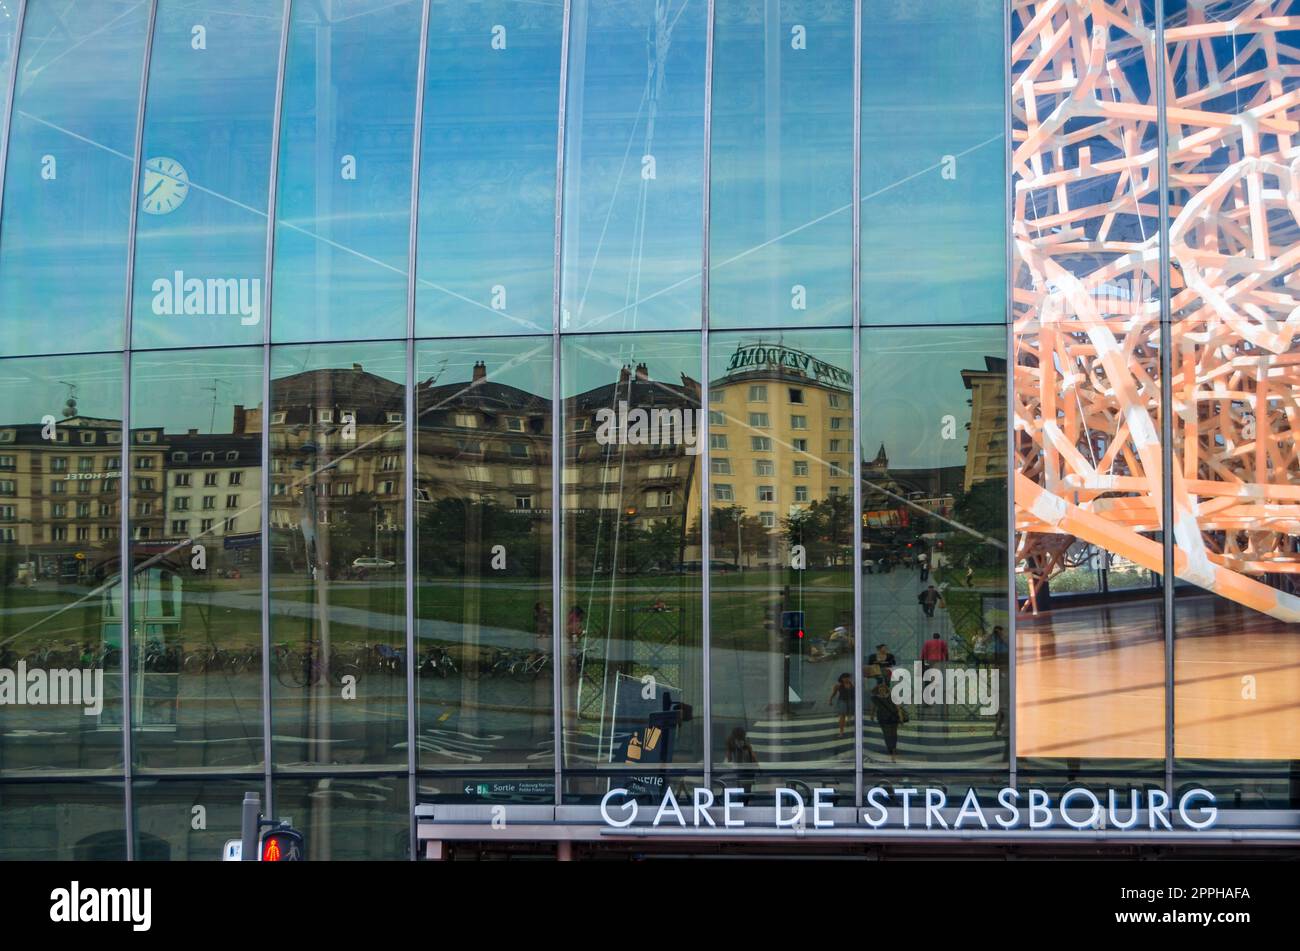 STRASSBURG, FRANKREICH - 29. AUGUST 2013: Fassadendetail des modernen Straßburger Bahnhofs, Elsass, Frankreich Stockfoto